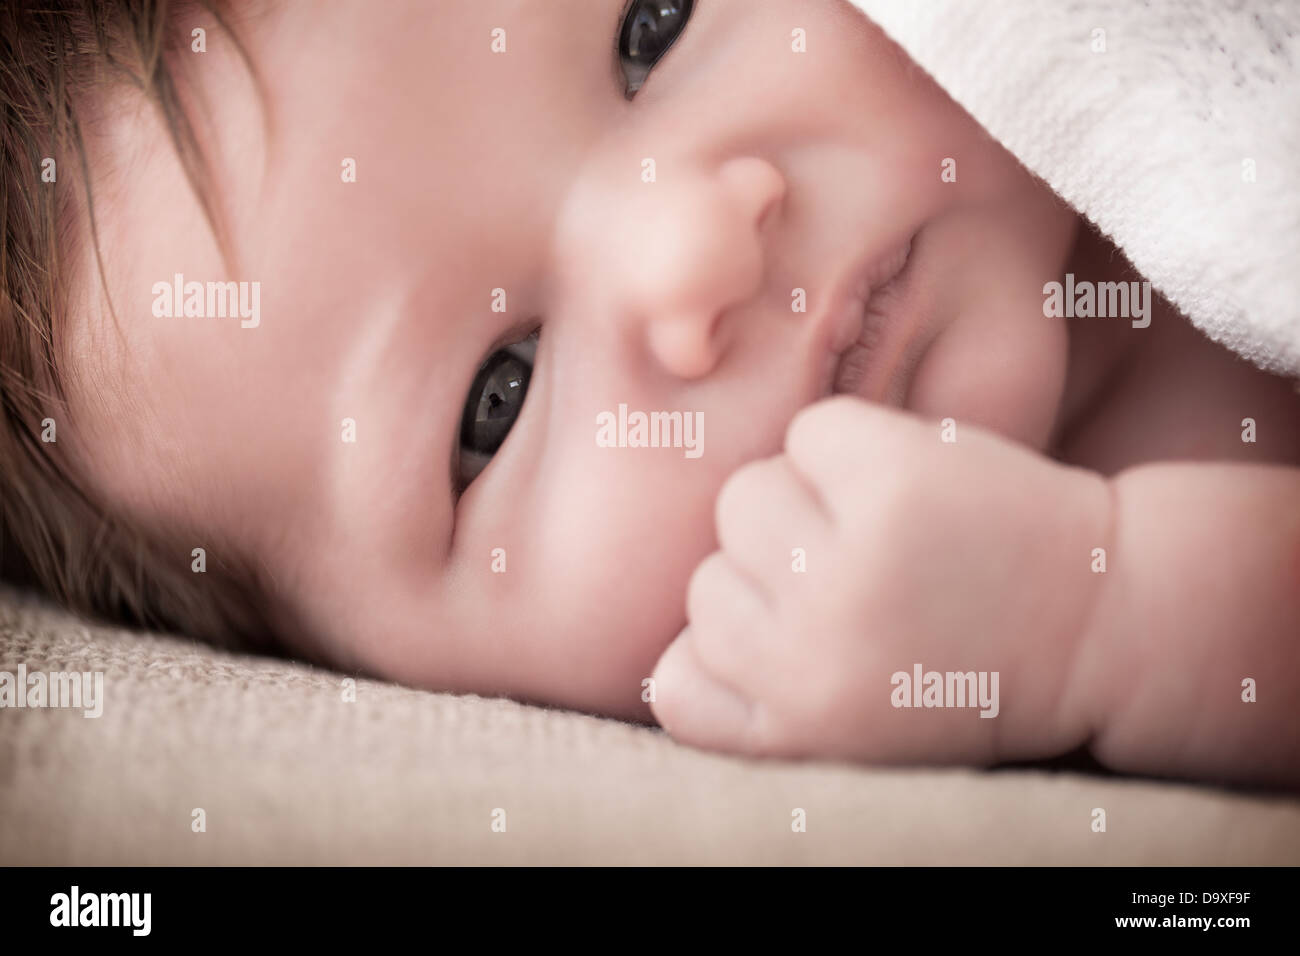 Newborn Stock Photo